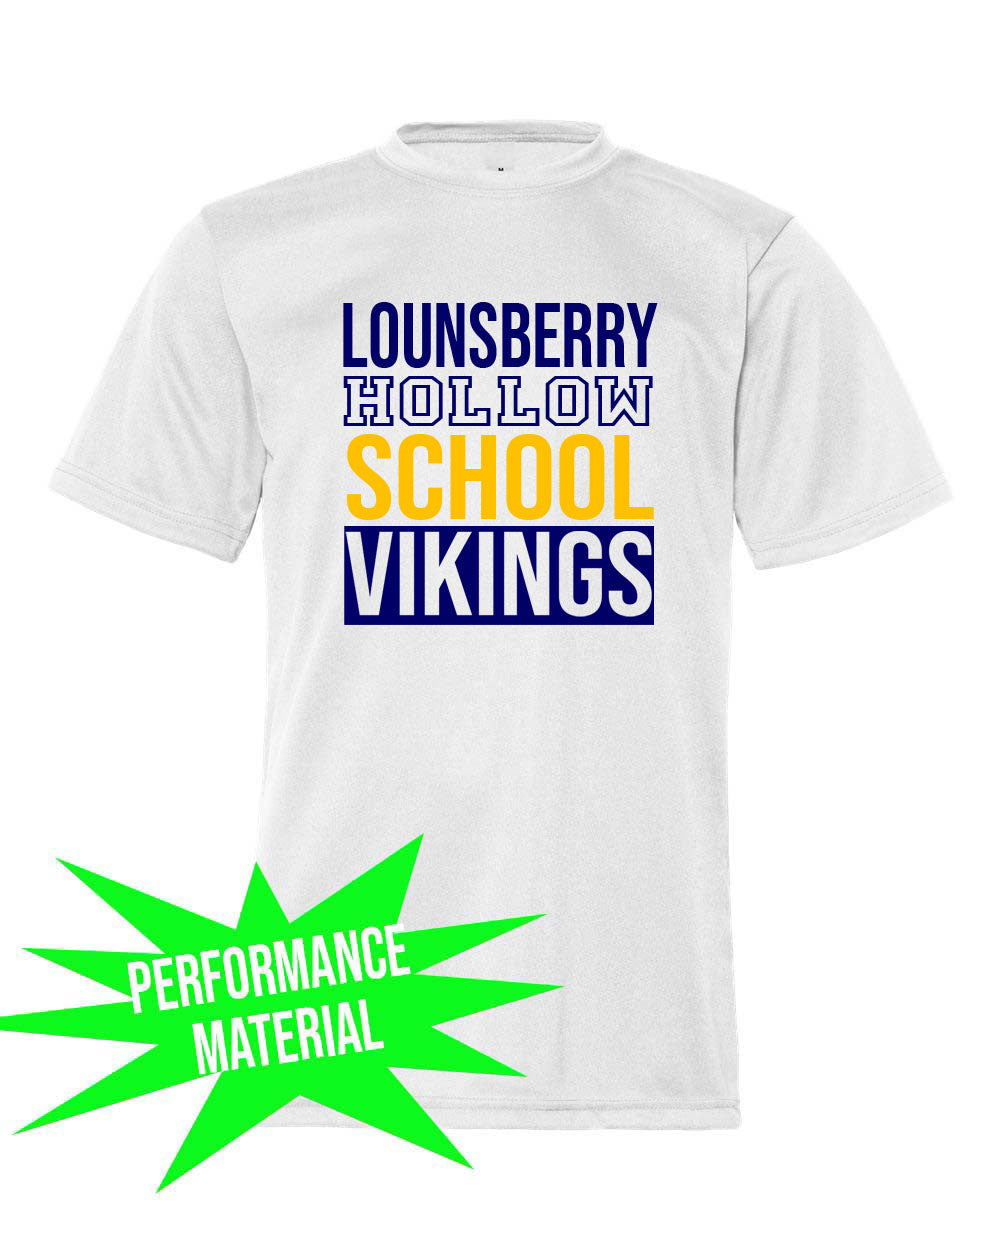 Lounsberry Hollow Performance Material T-Shirt  Design 1